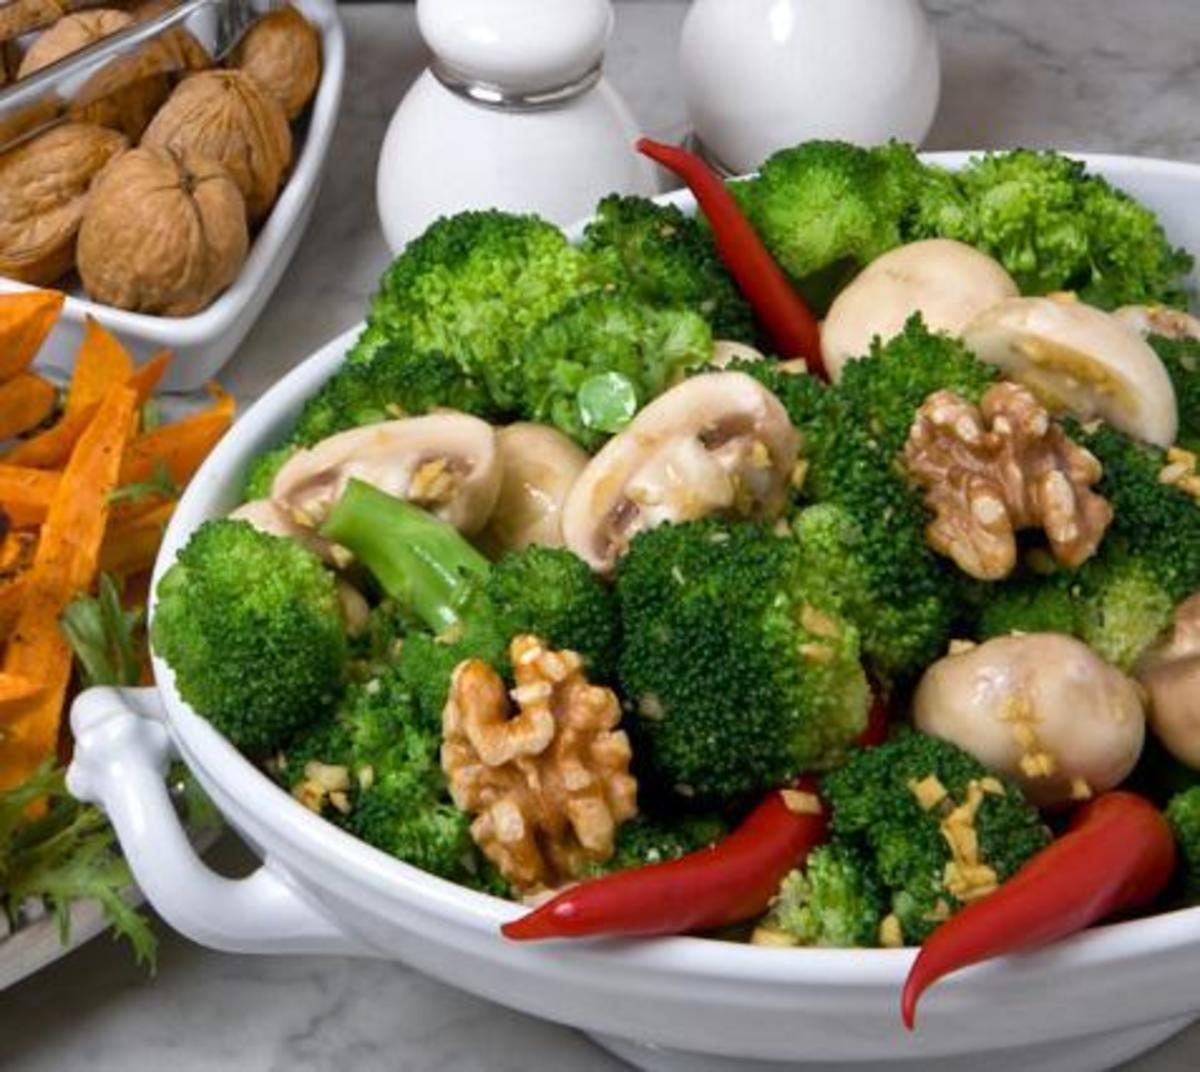 Mollie Katzen’s Broccoli Salad with Mushrooms & Walnuts